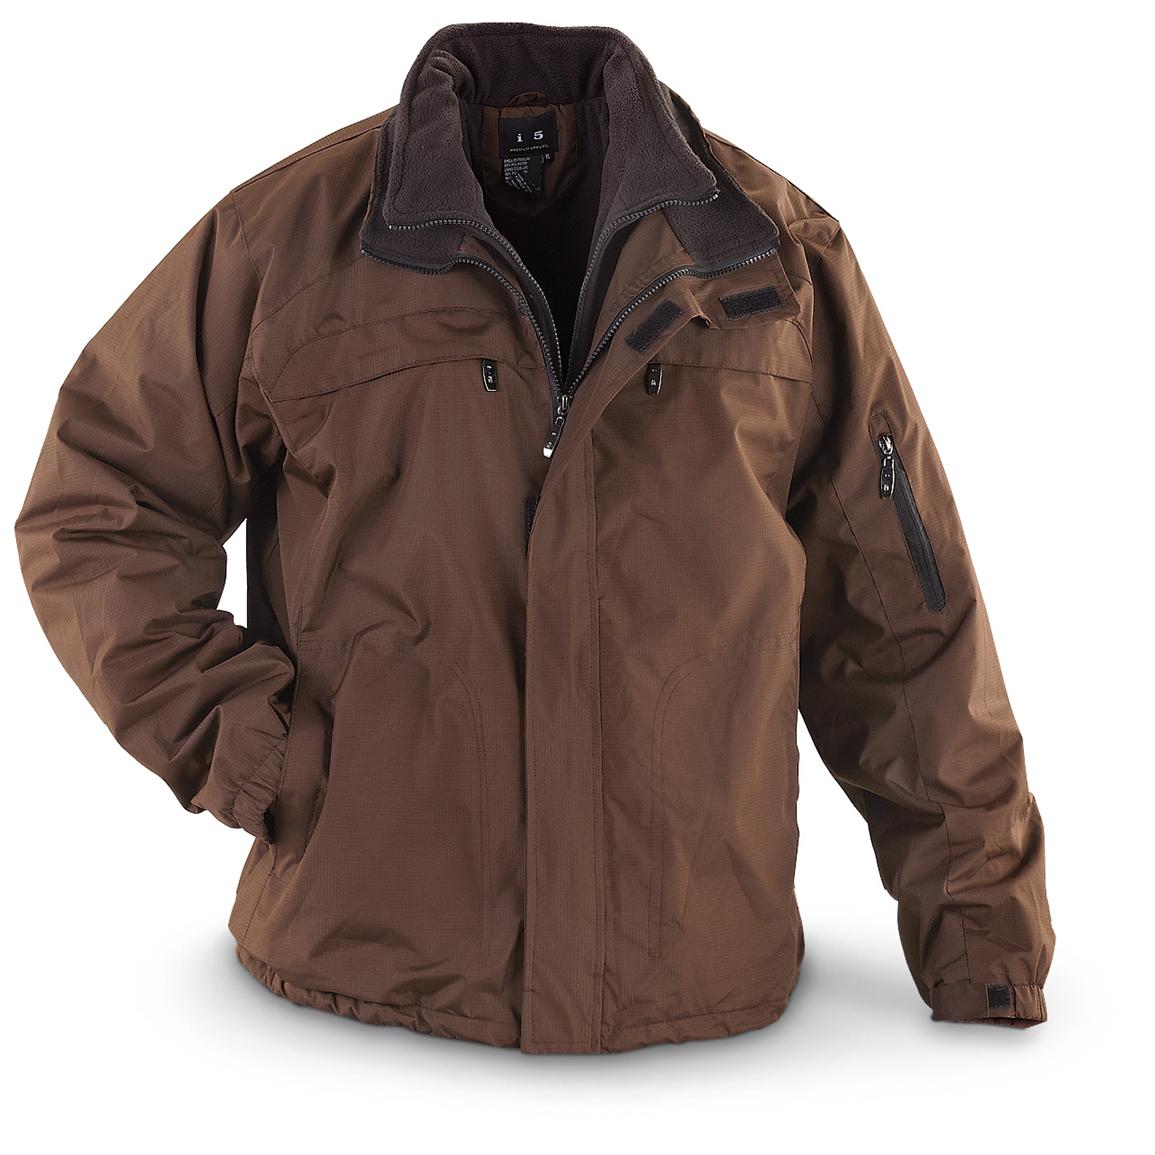 I5® Nylon Ripstop Jacket 225598, Uninsulated Jackets & Coats at